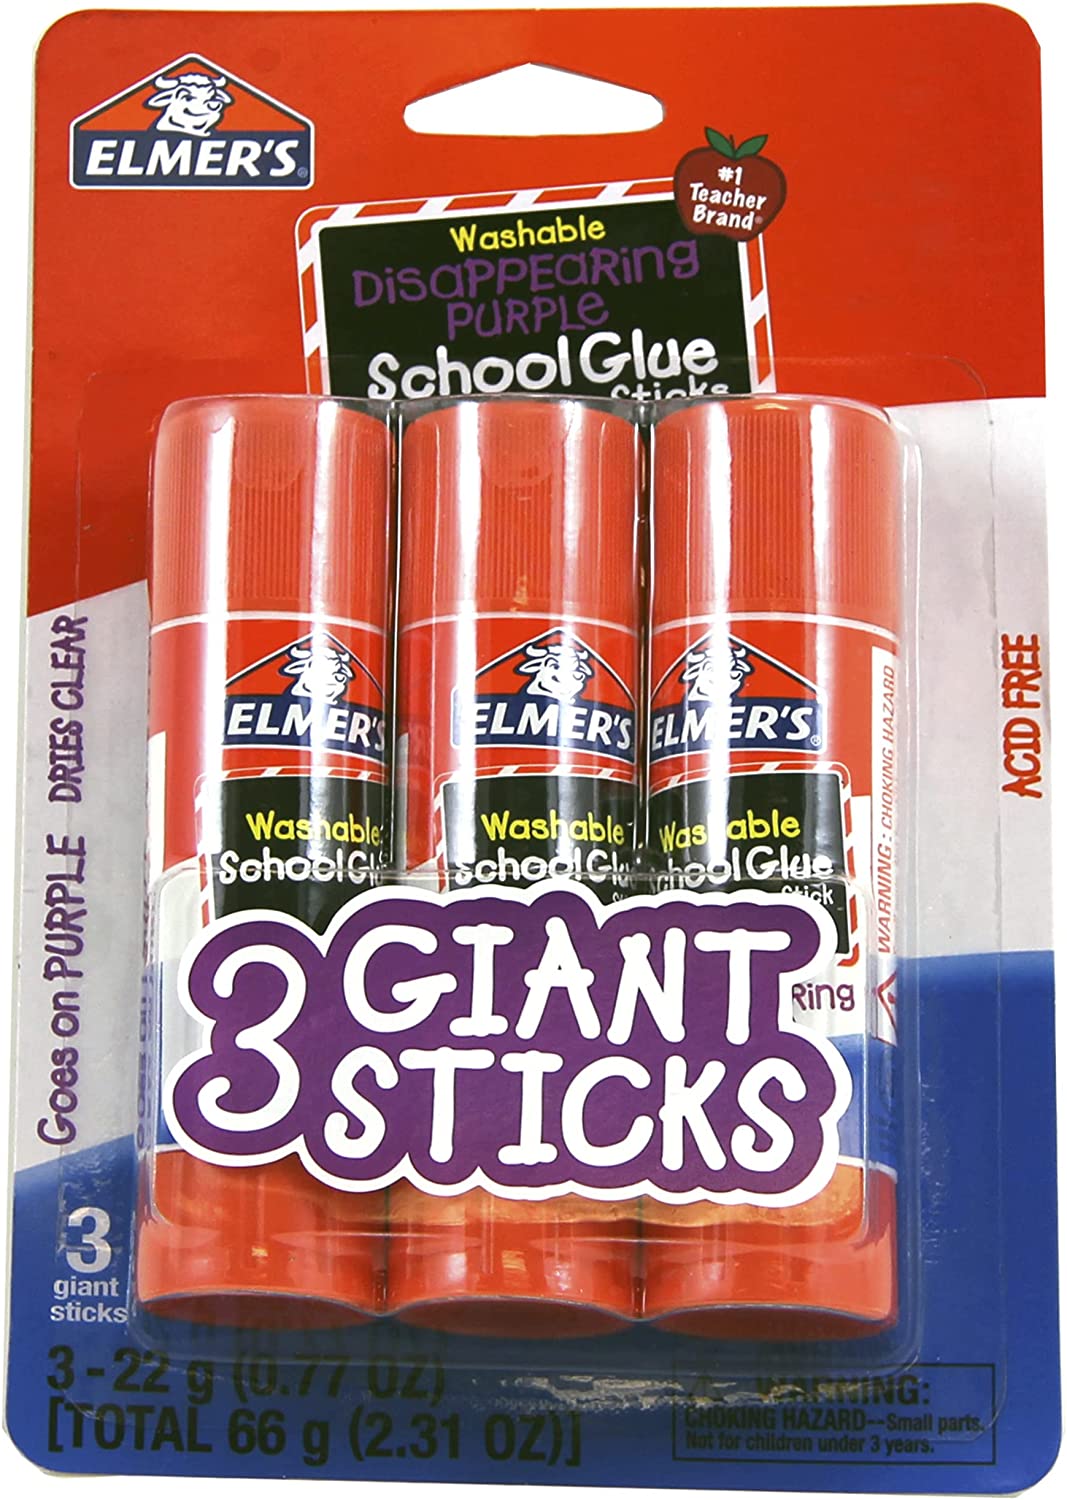 Avery Glue Stic Washable, Nontoxic, Permanent Adhesive, 1.27 oz., 1 Stick (00191)